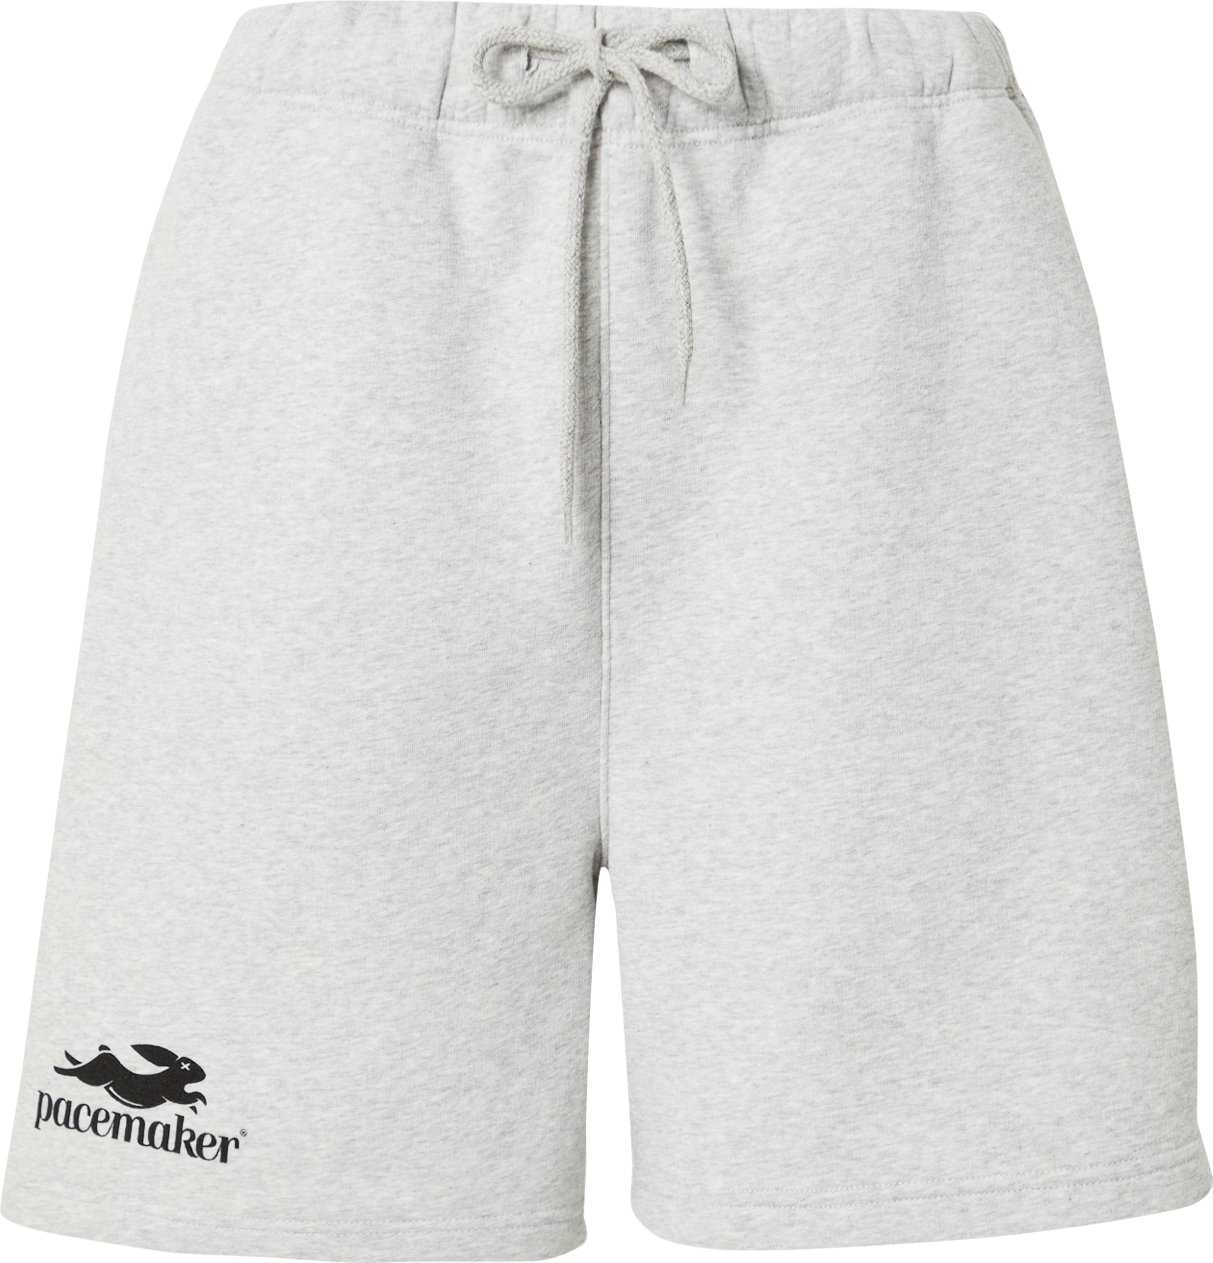 Pacemaker Kalhoty 'Jimmy' světle šedá / šedý melír / černá